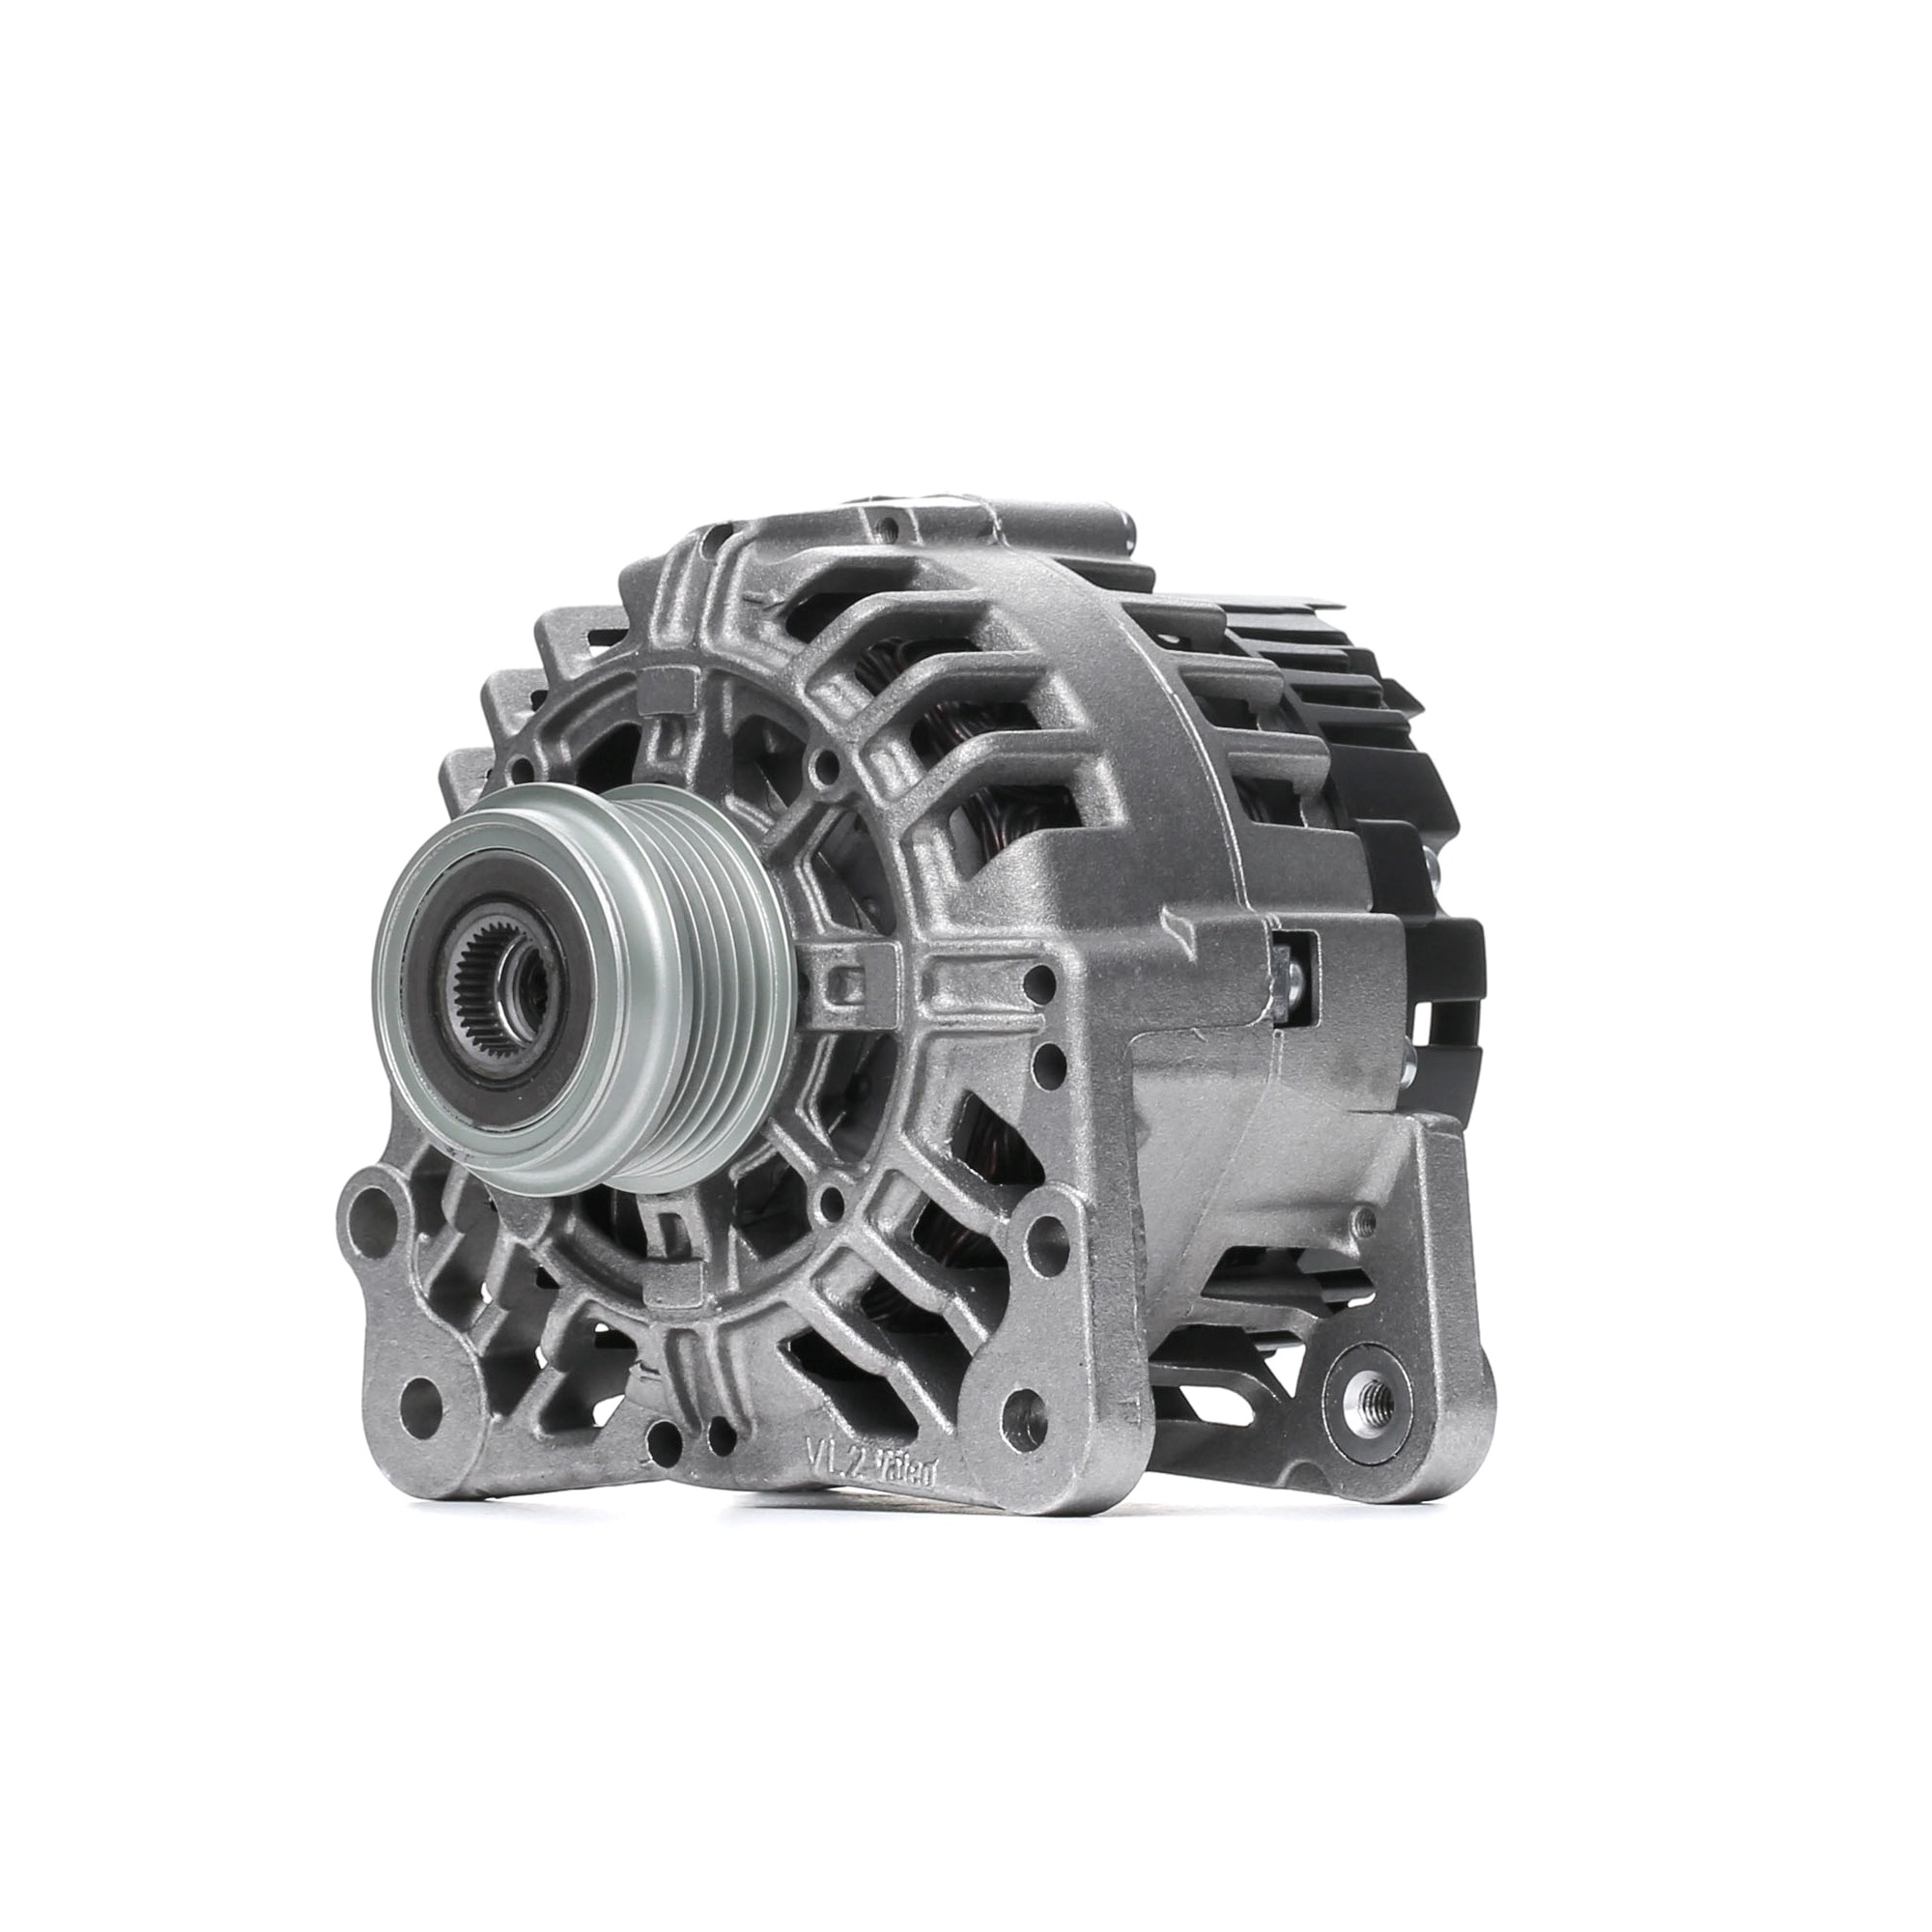 Alternator for Passat 3B6 1.9 TDI 4motion 130 hp Diesel 96 kW 2000